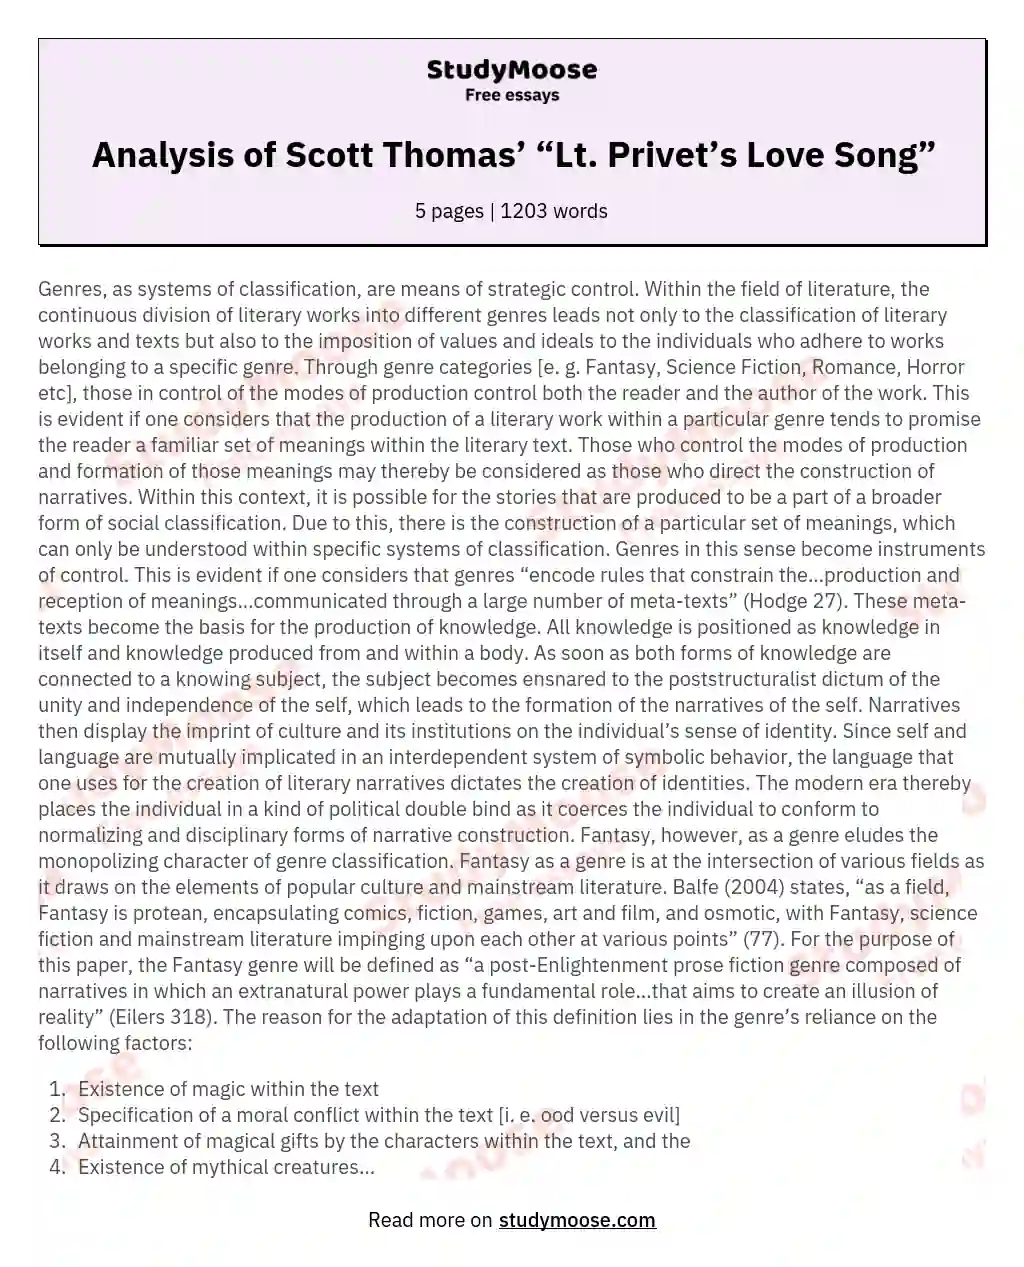 Analysis of Scott Thomas’ “Lt. Privet’s Love Song” essay